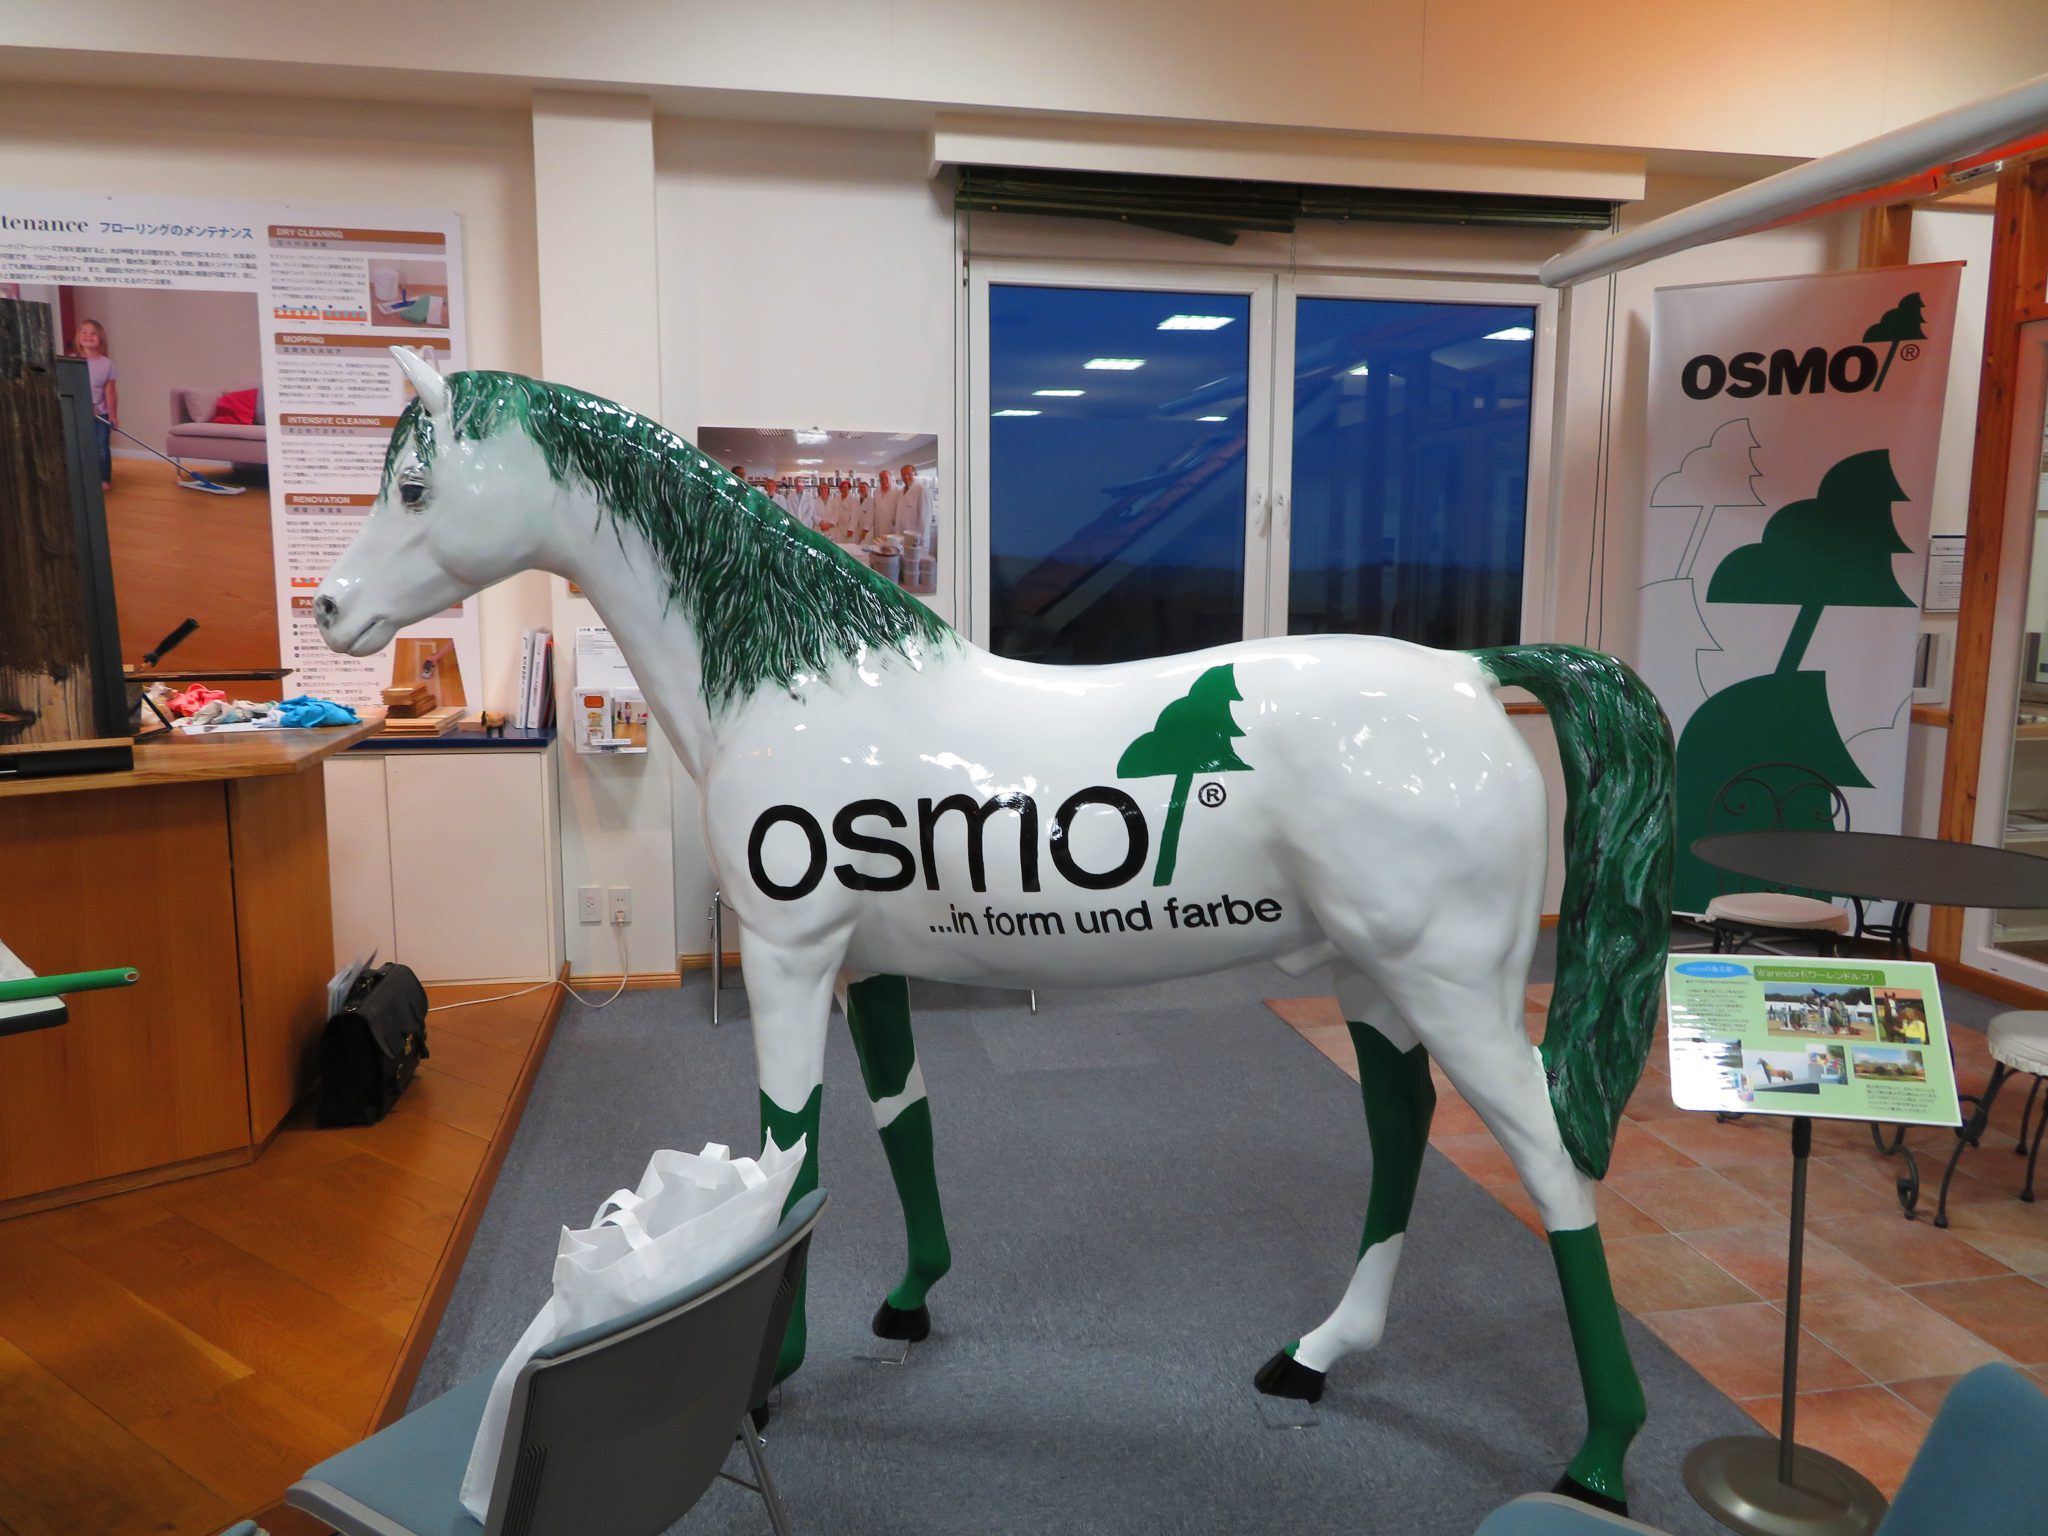 OSMOセミナー@オスモ&エーデル株式会社に参加しました